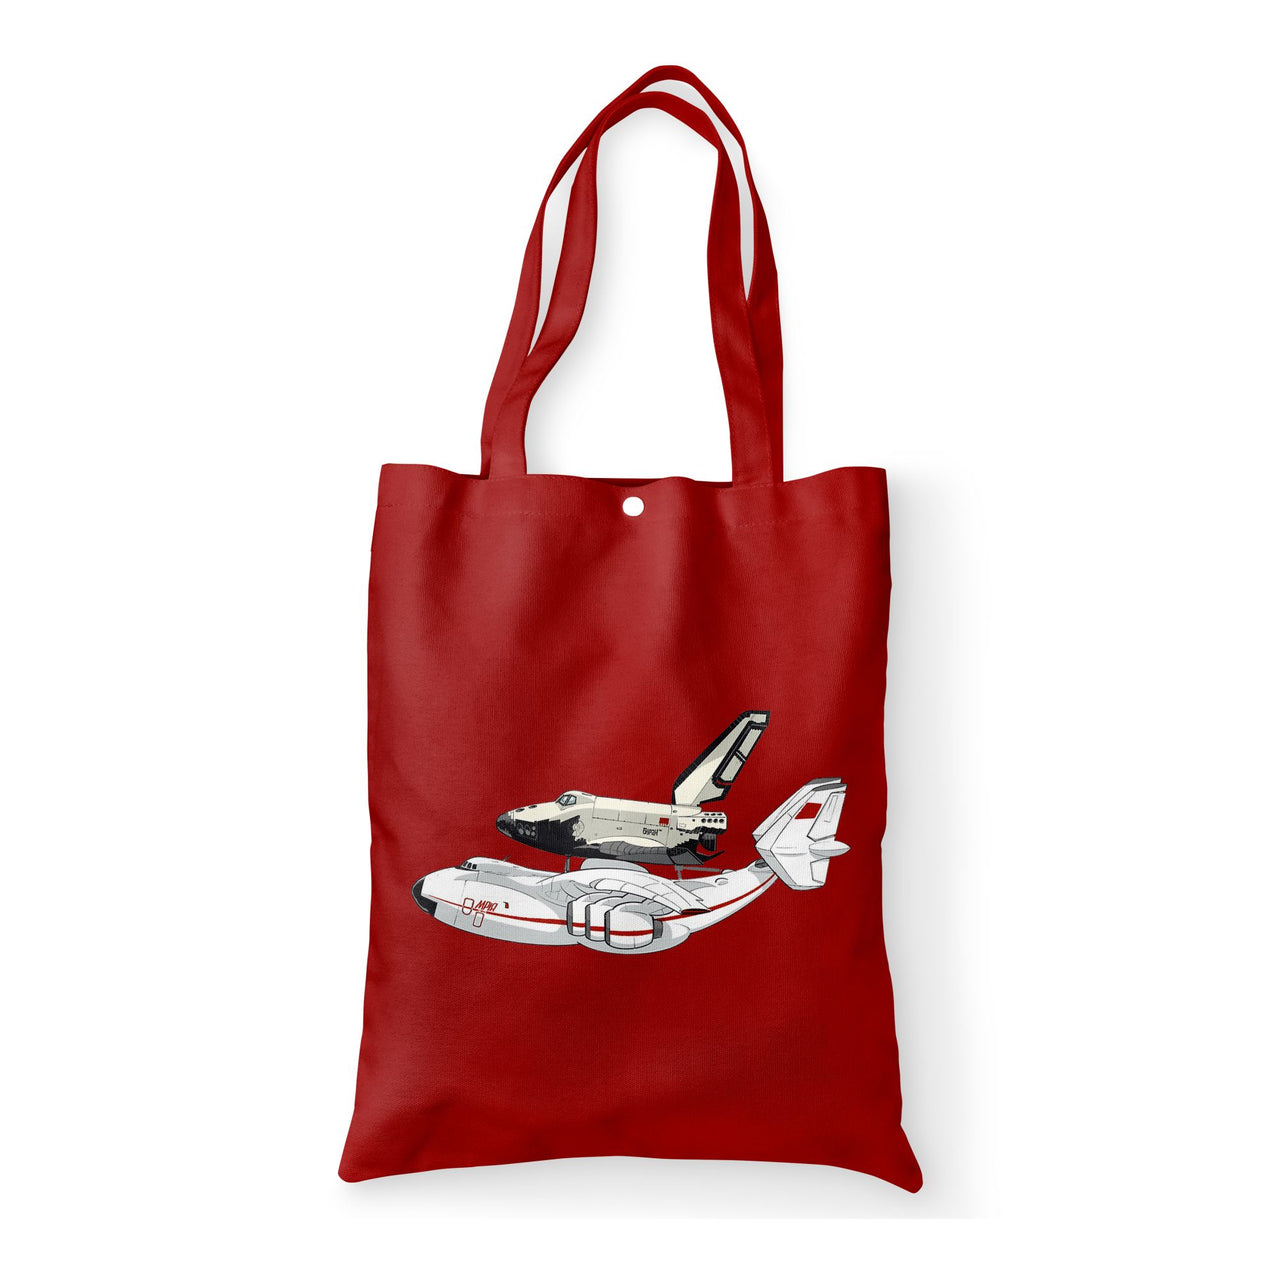 Buran & An-225 Designed Tote Bags